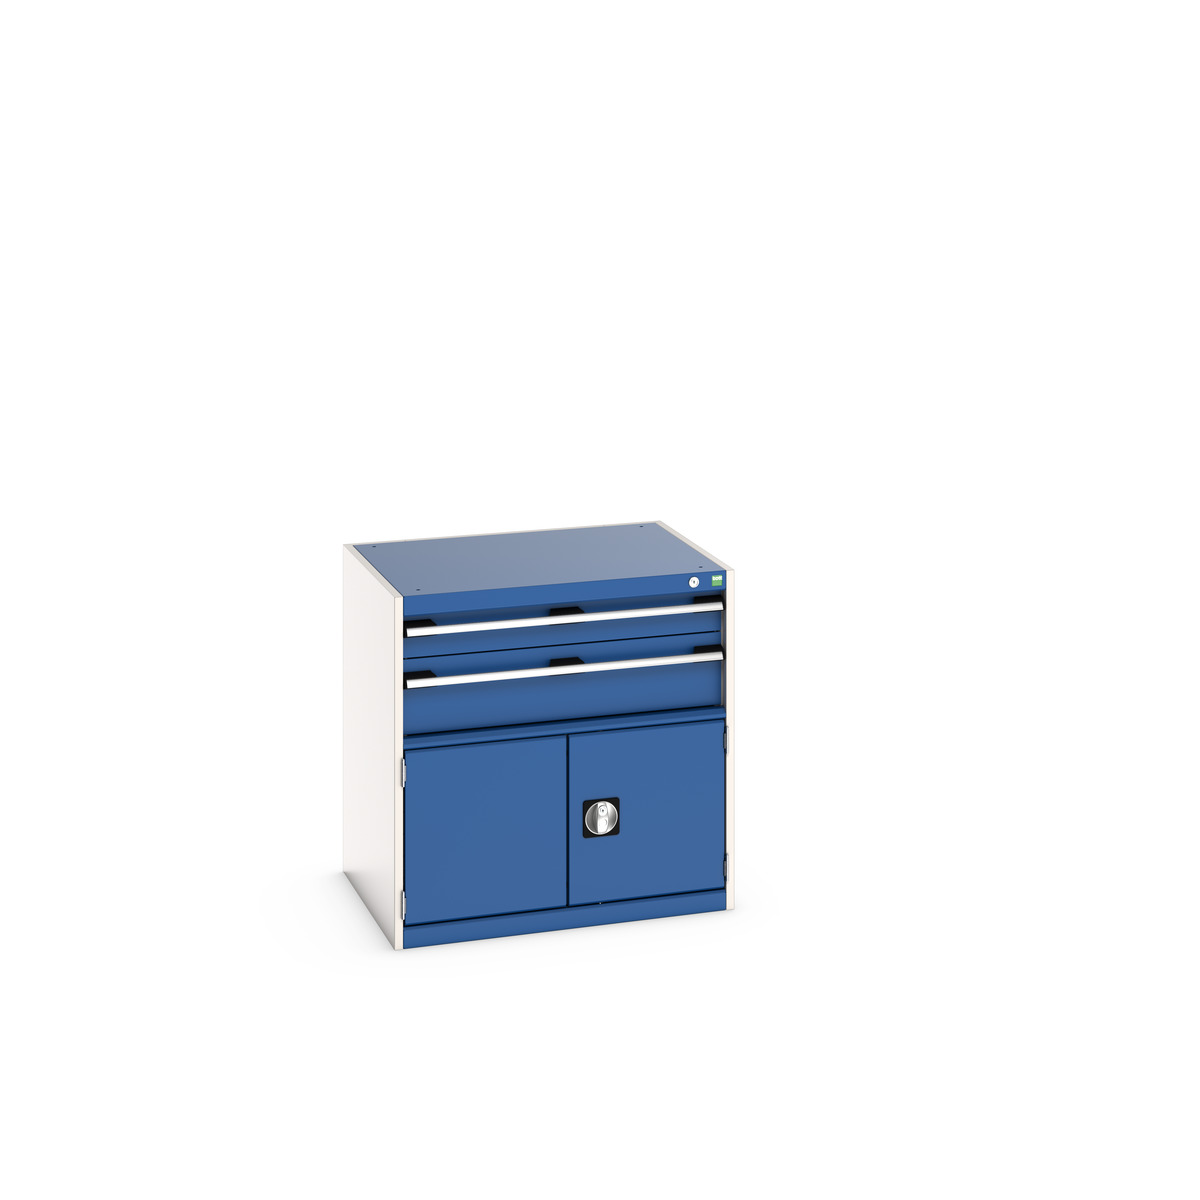 40020022.11V - cubio drawer-door cabinet